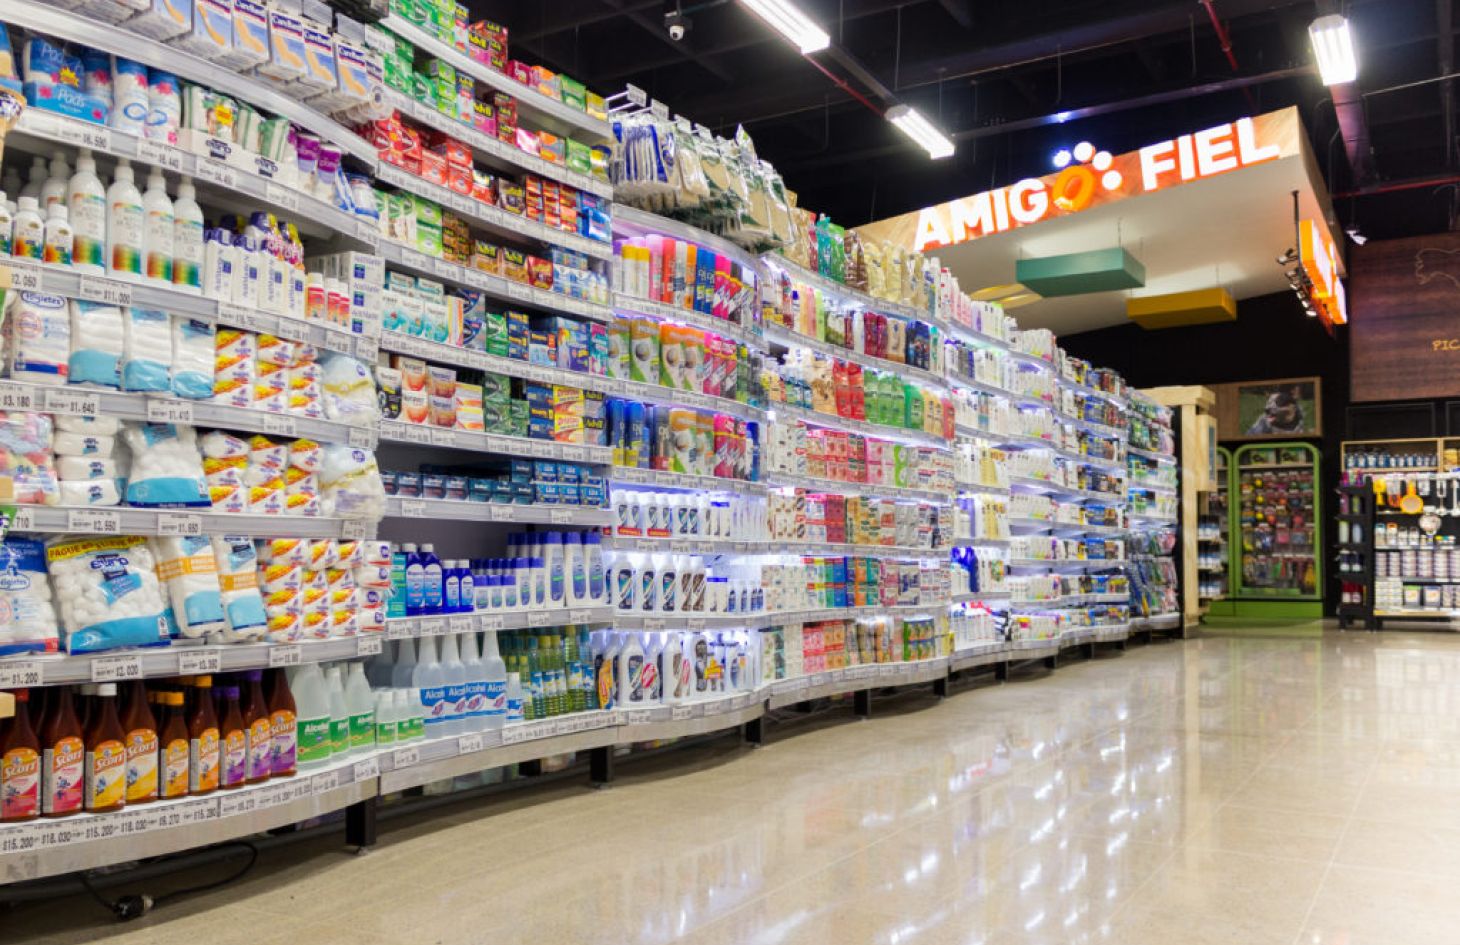 Personal grooming supermarket shelve gondola de supermercado curva innovacion